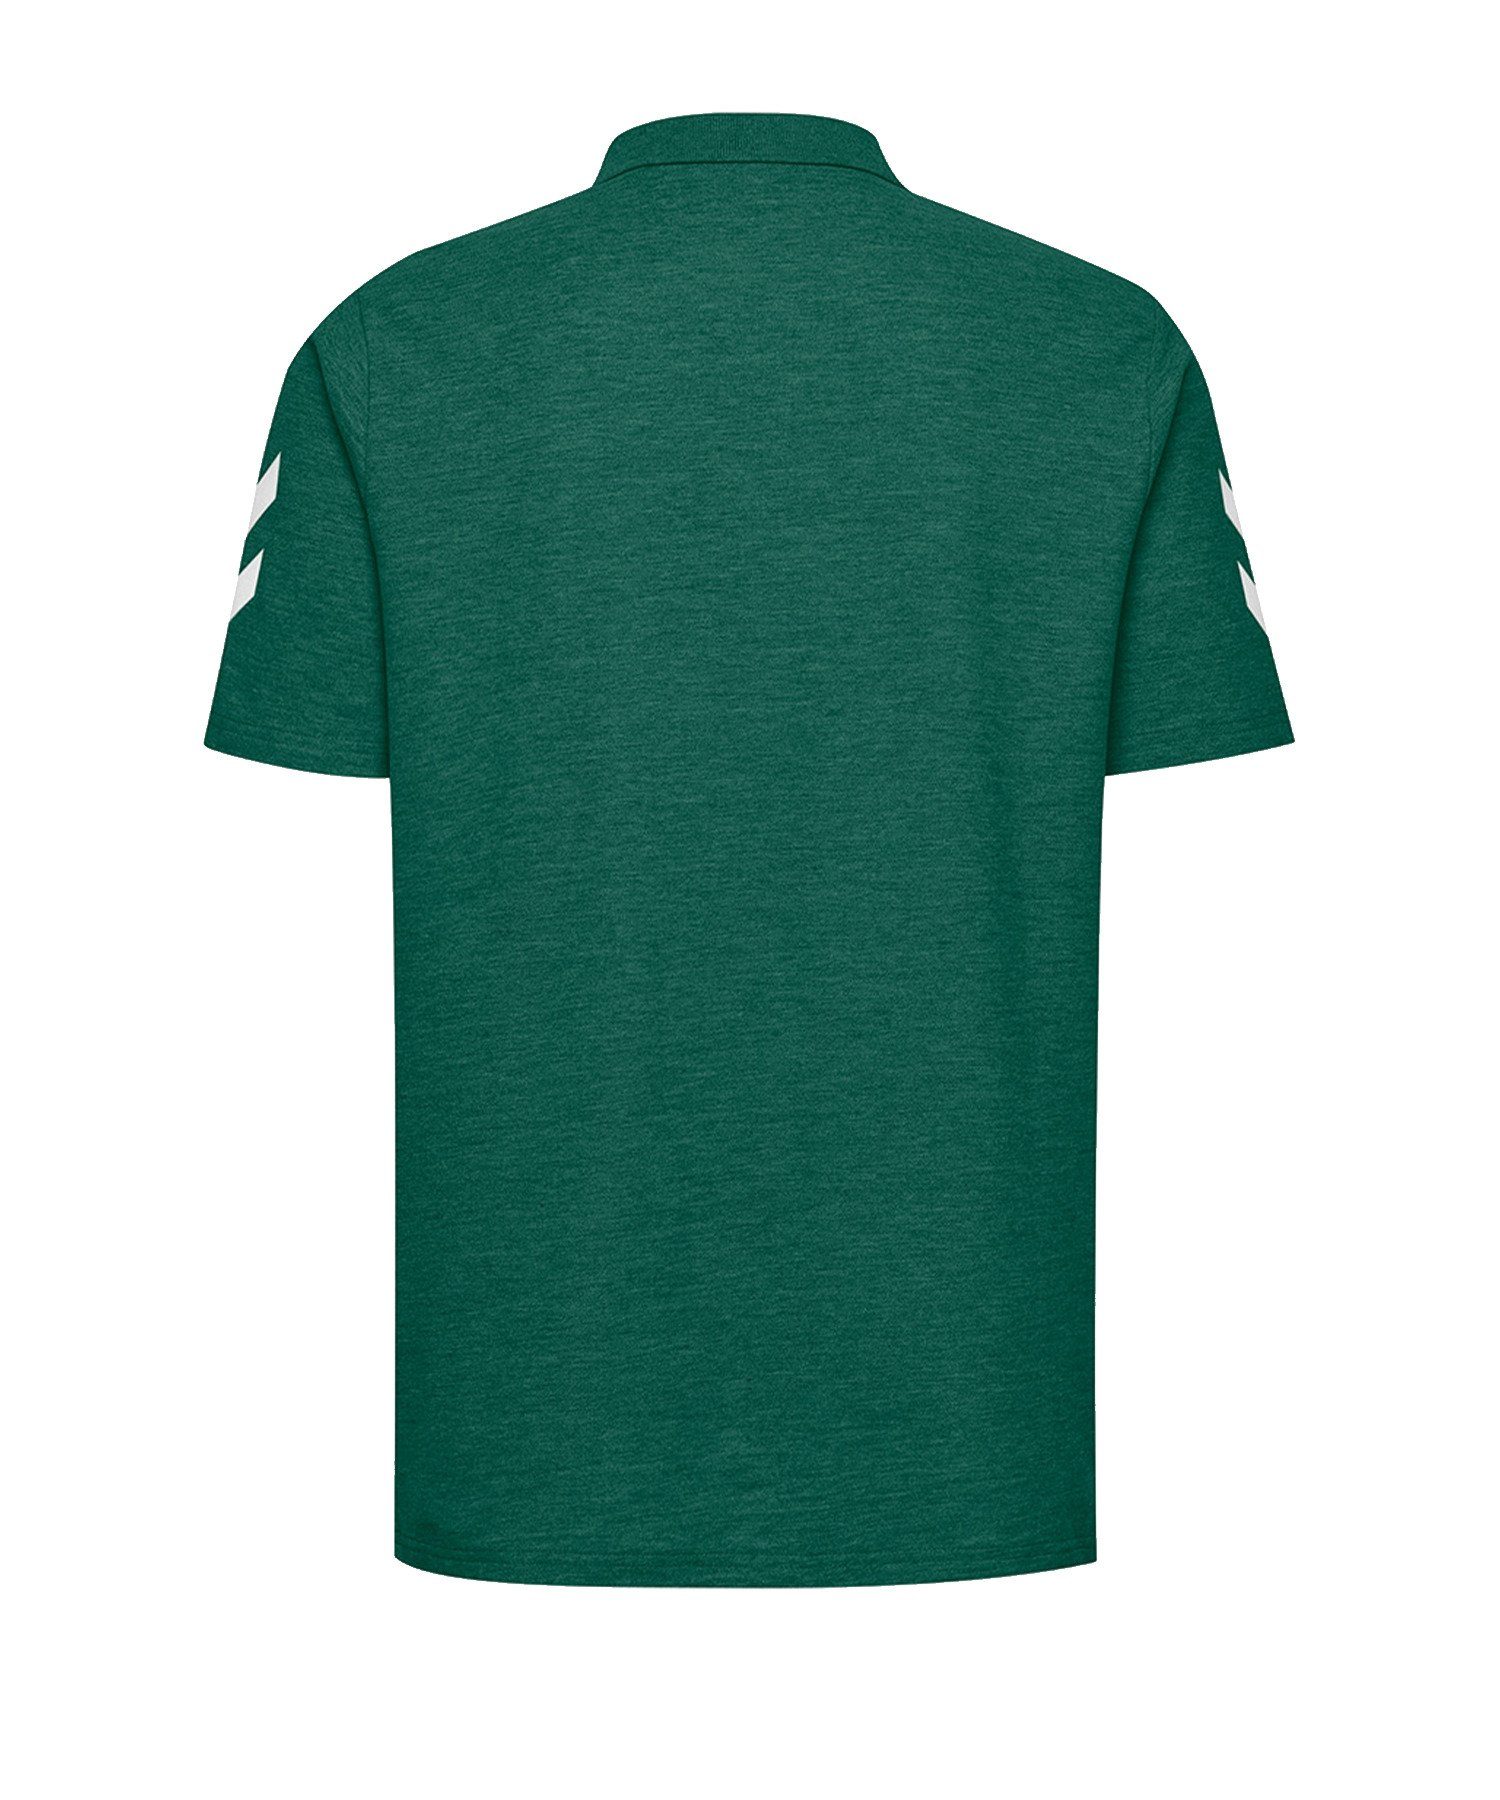 T-Shirt Gruen default hummel Poloshirt Cotton